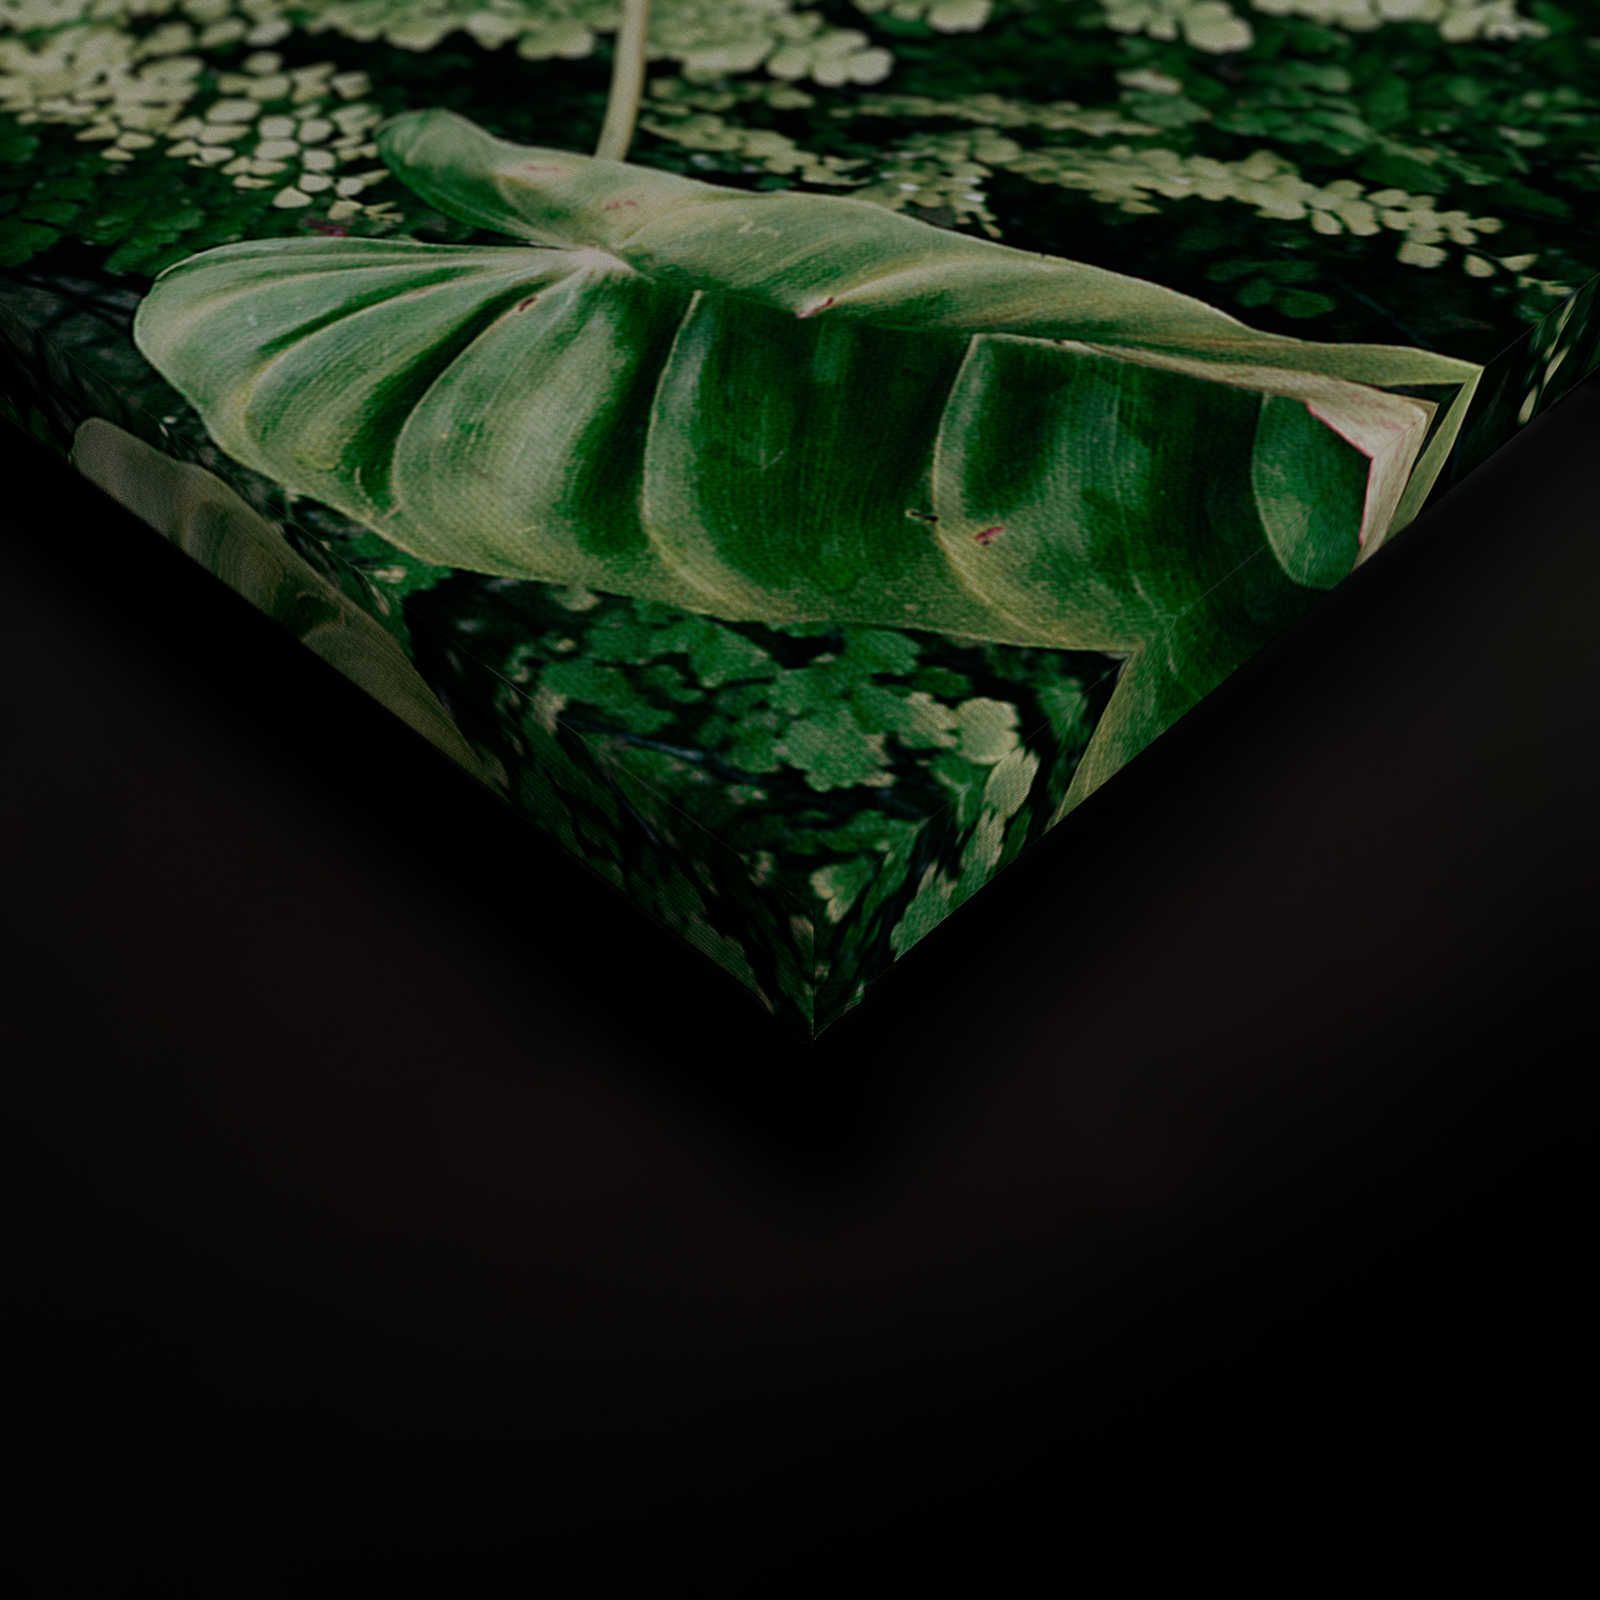             Deep Green 2 - Canvas schilderij Loofbos, varens & hangplanten - 0.90 m x 0.60 m
        